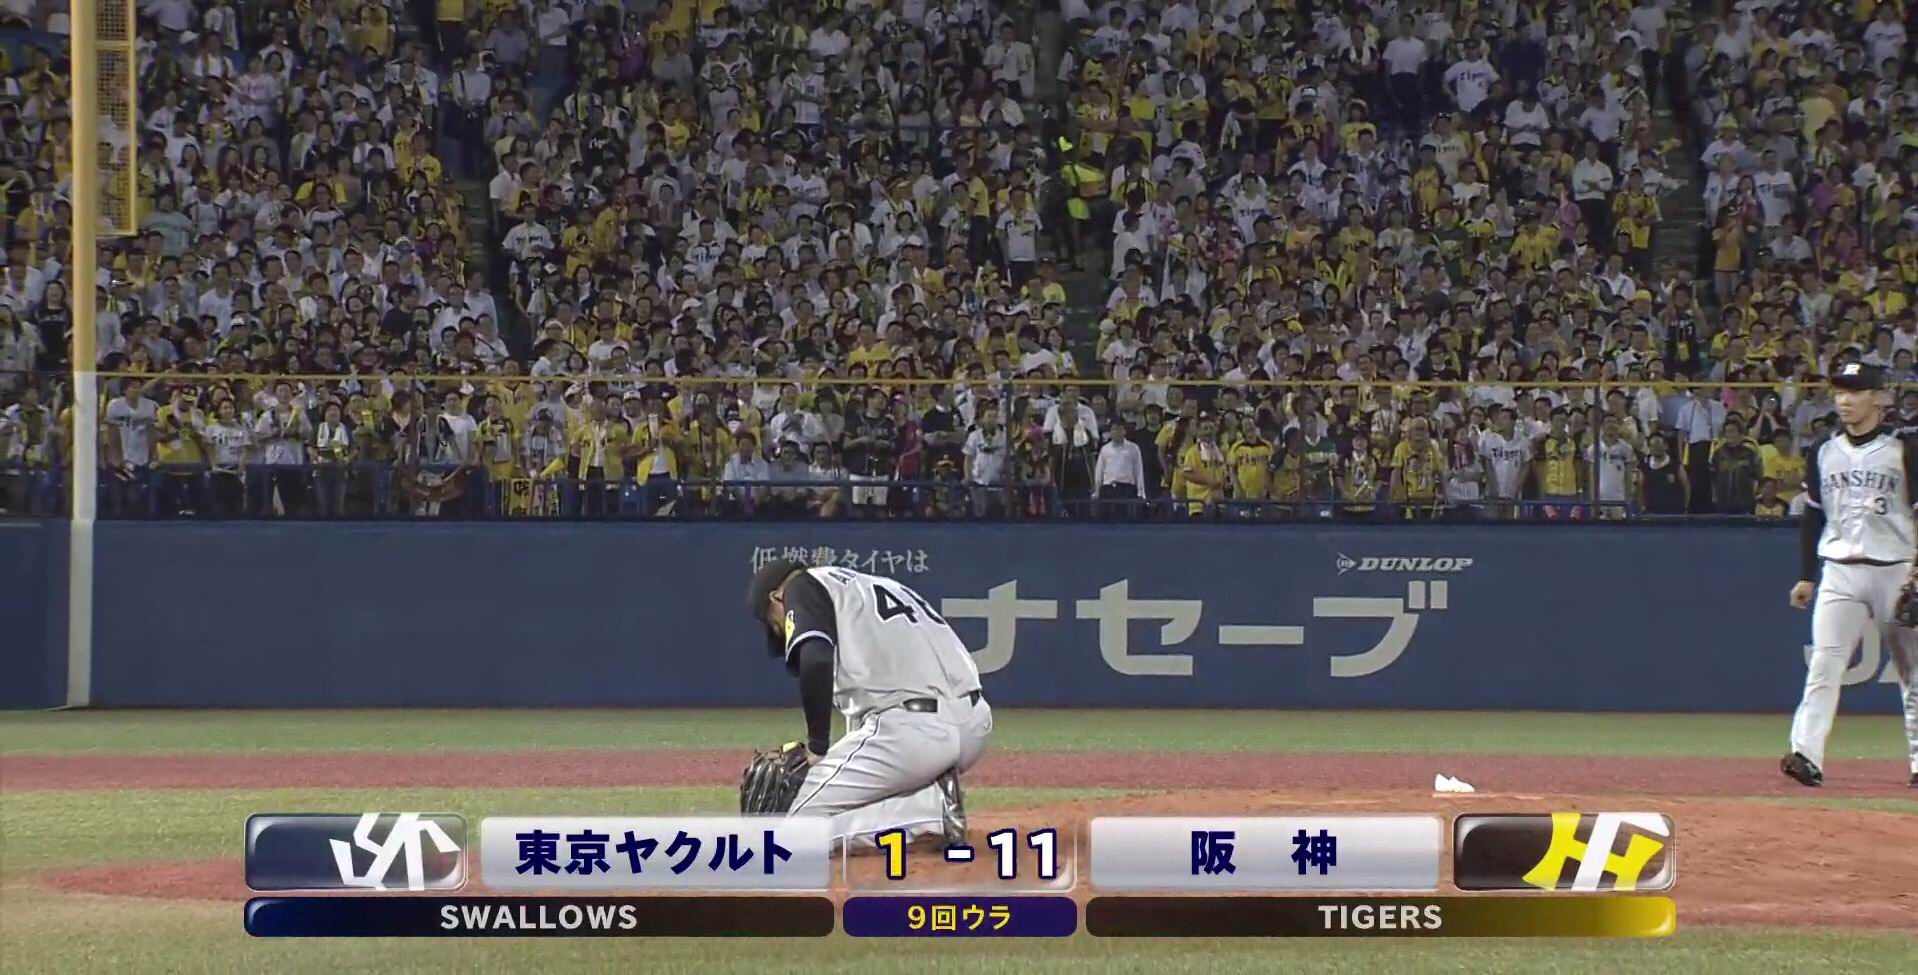 お前らが阪神の選手のかっこいい画像貼ってくれるスレ トラニュース 阪神タイガース応援ファンサイト